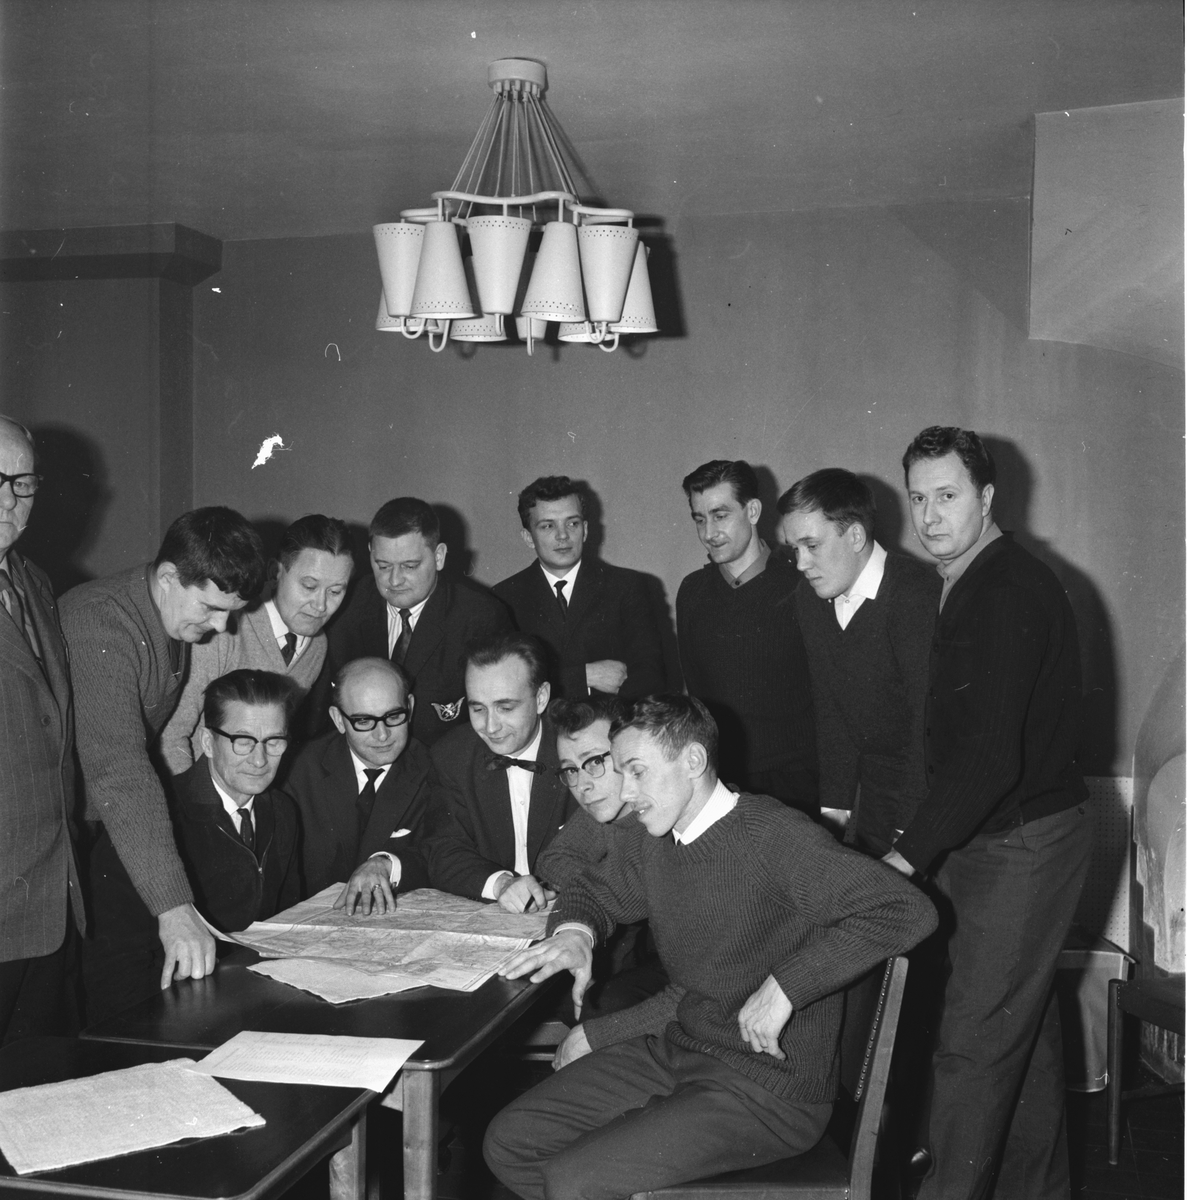 Ljusne Flugfiskeklubb,
Möte,
25 Jan 1965